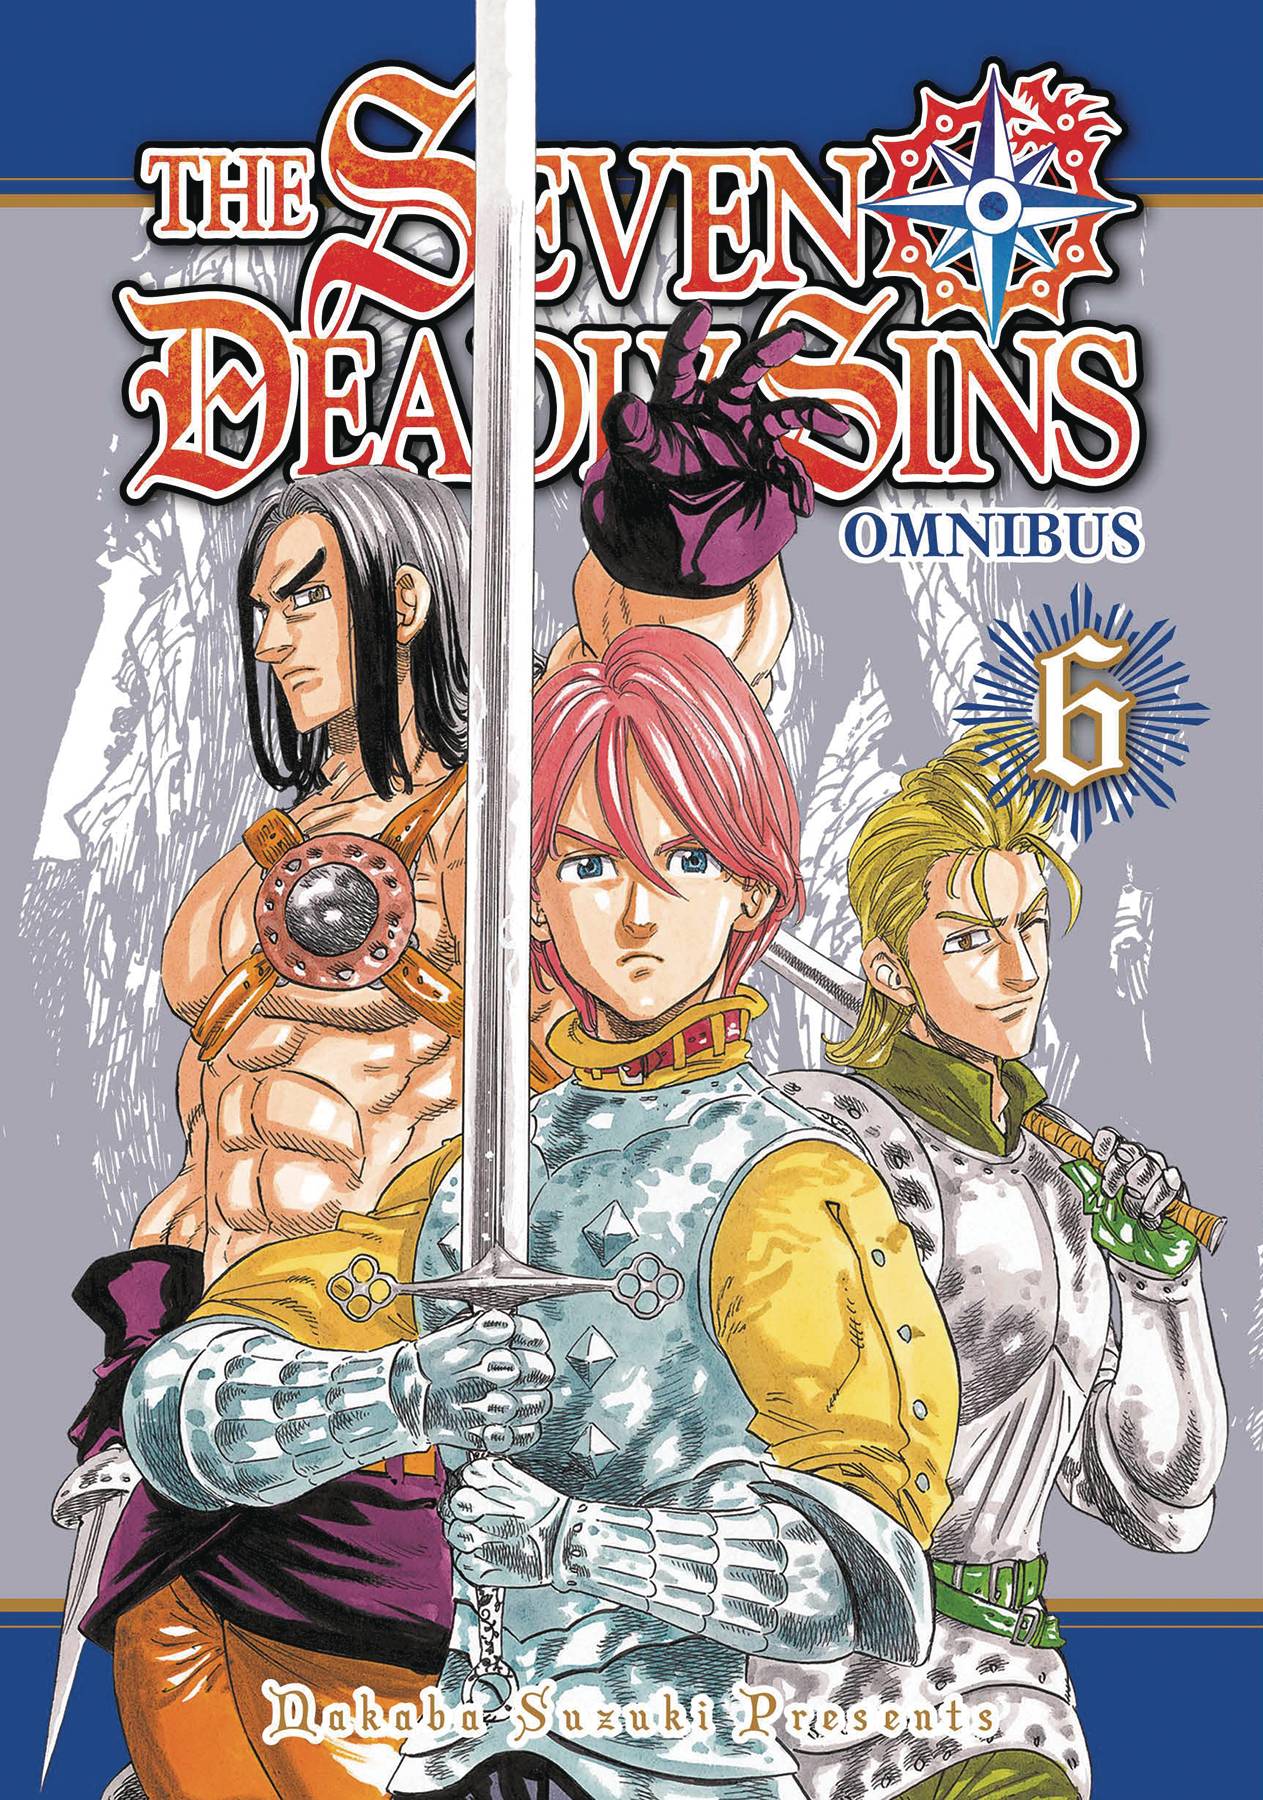 The One Stop Shop Comics & Games Seven Deadly Sins Omnibus Gn Vol 06 (C: 0-1-1) (08/03/2022) KODANSHA COMICS